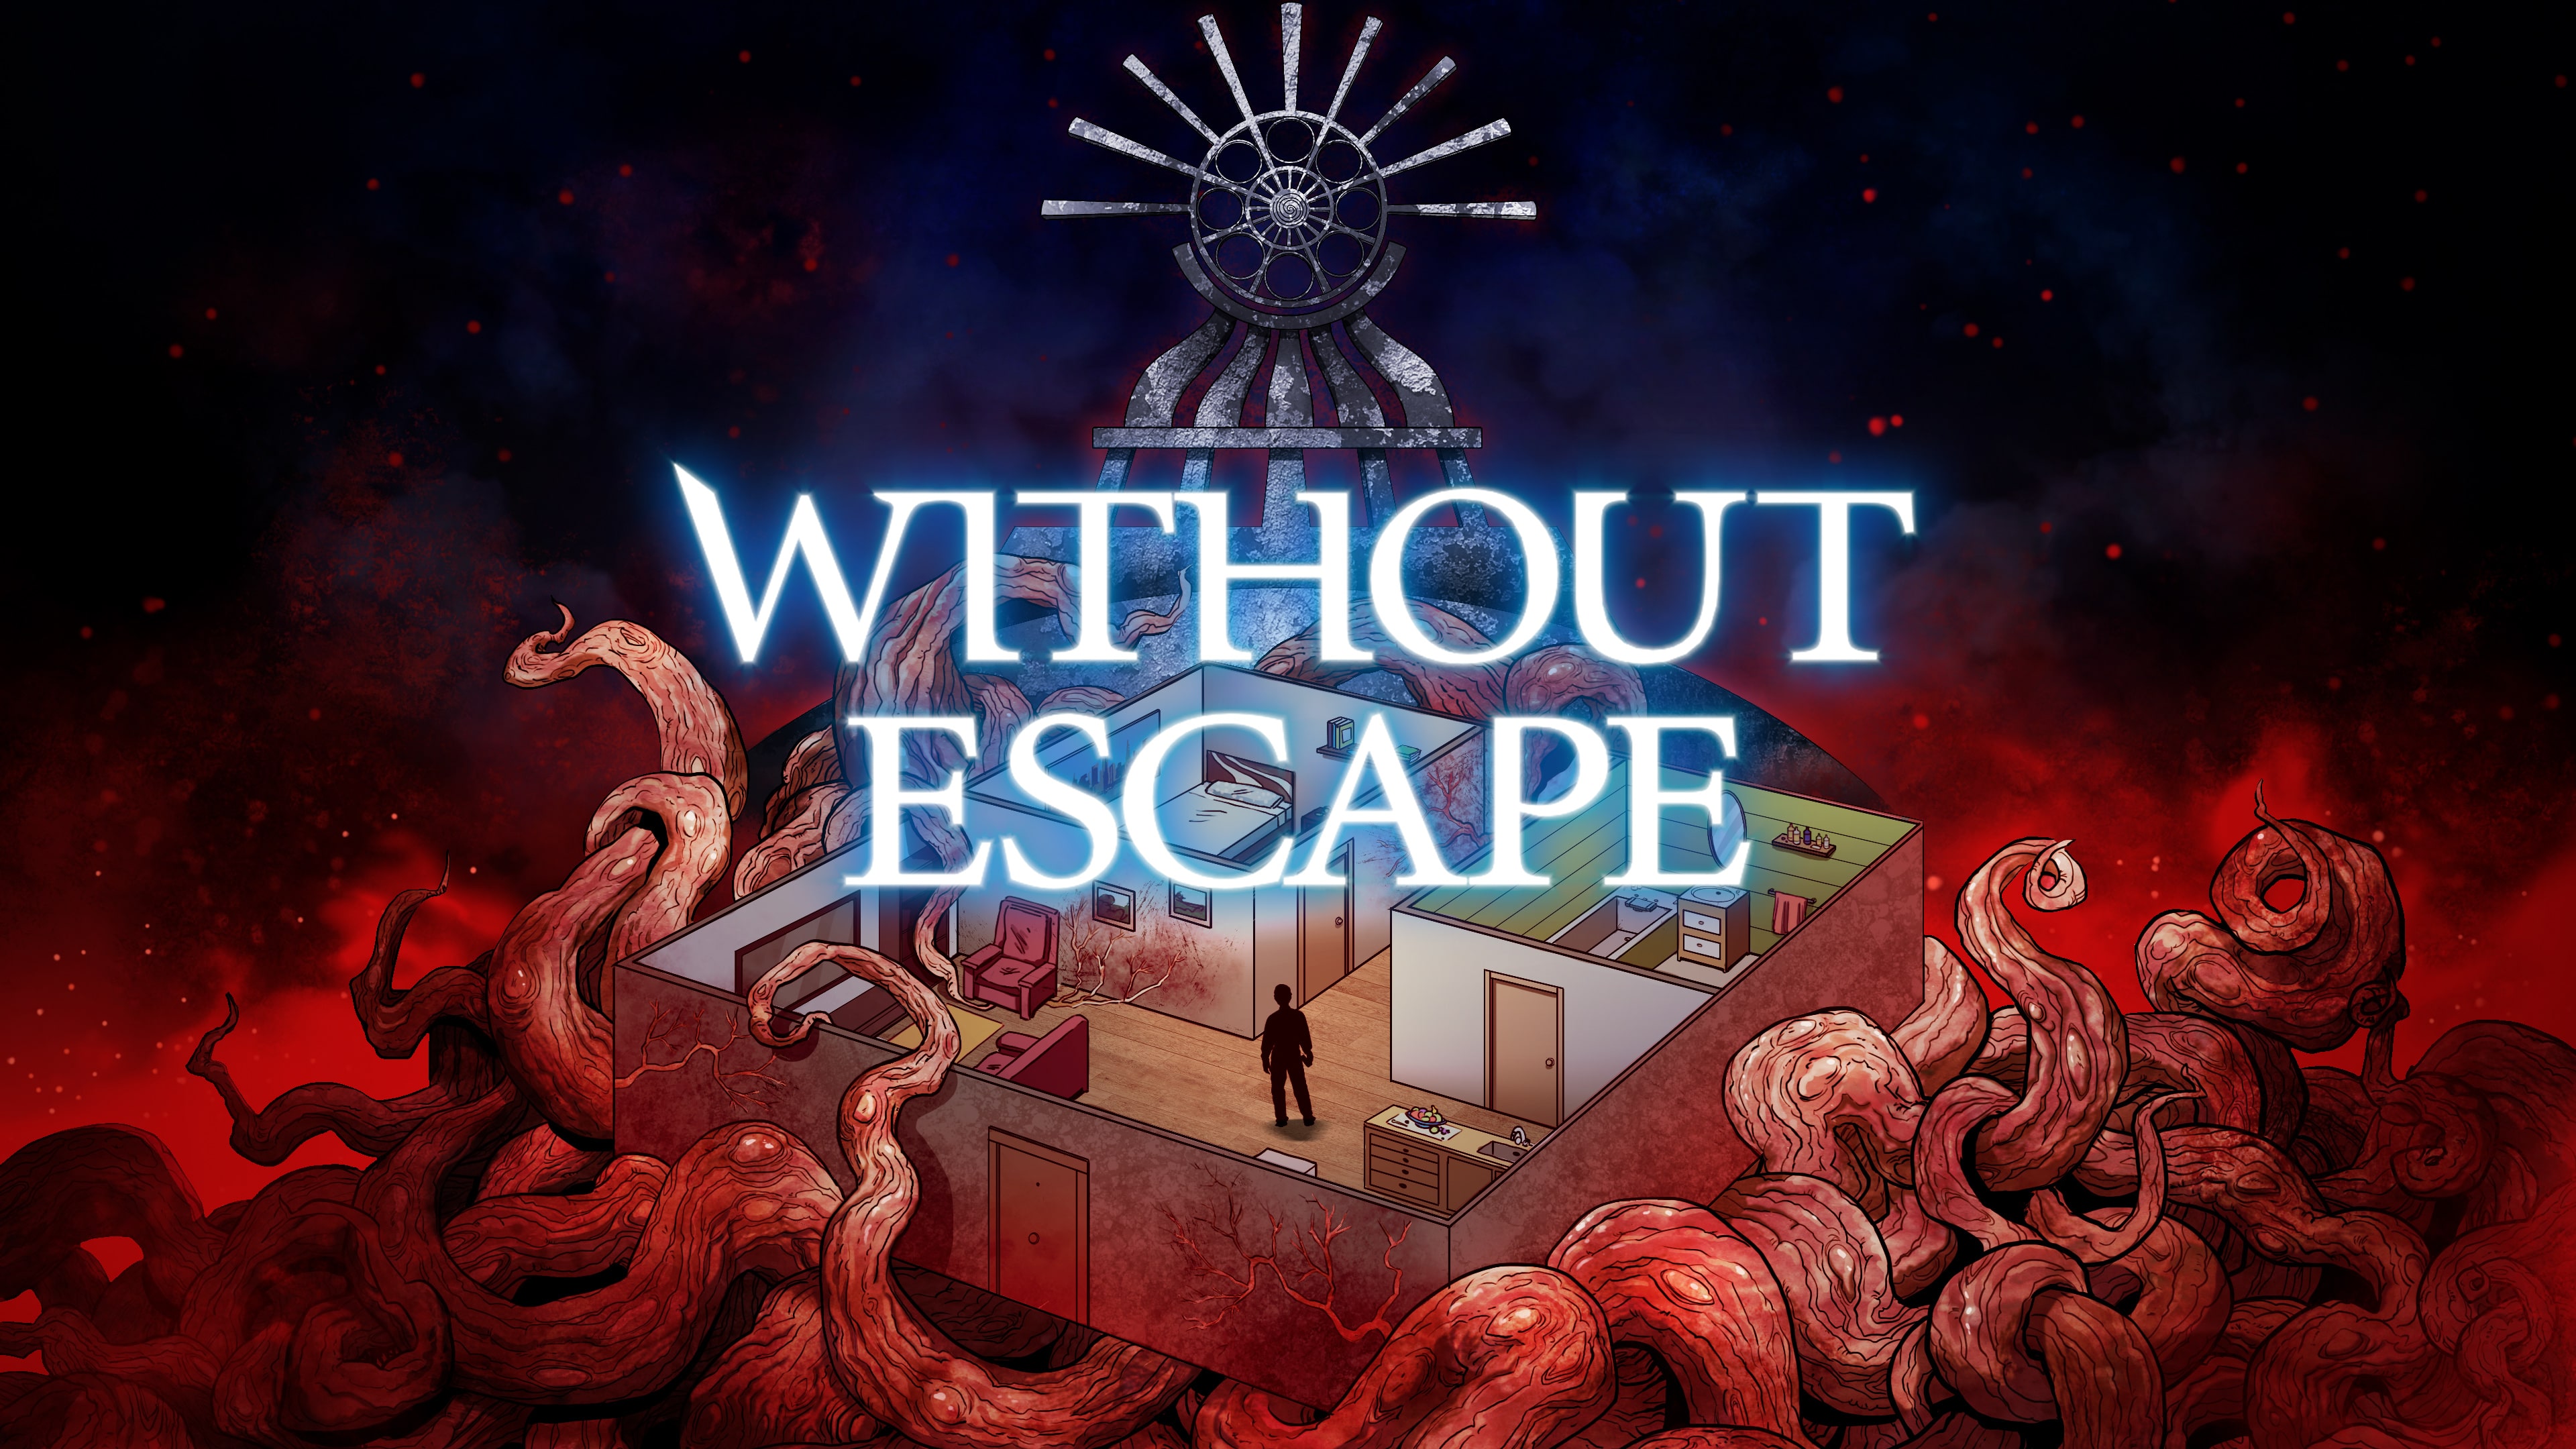 Without Escape